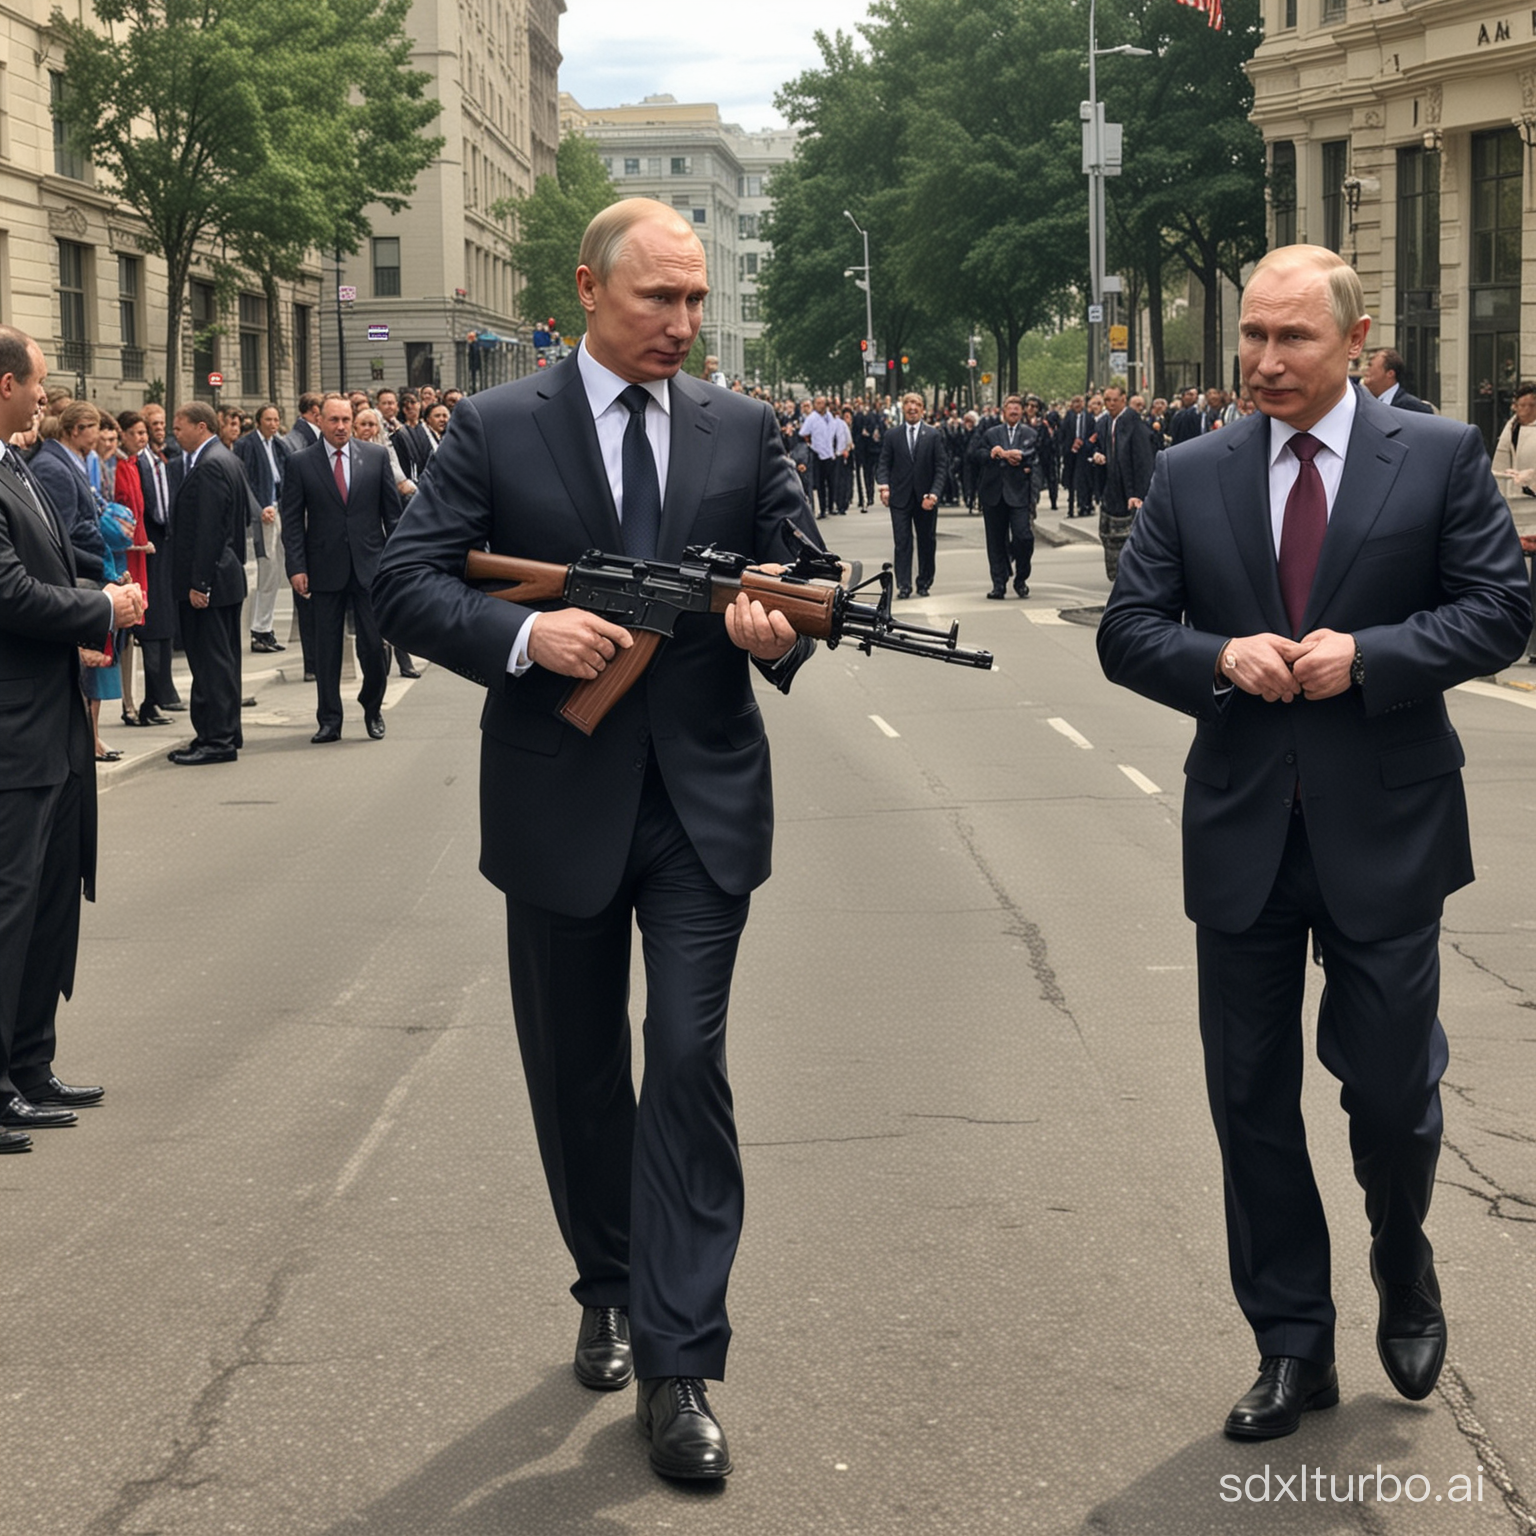 Putin on street in Washington with ak47